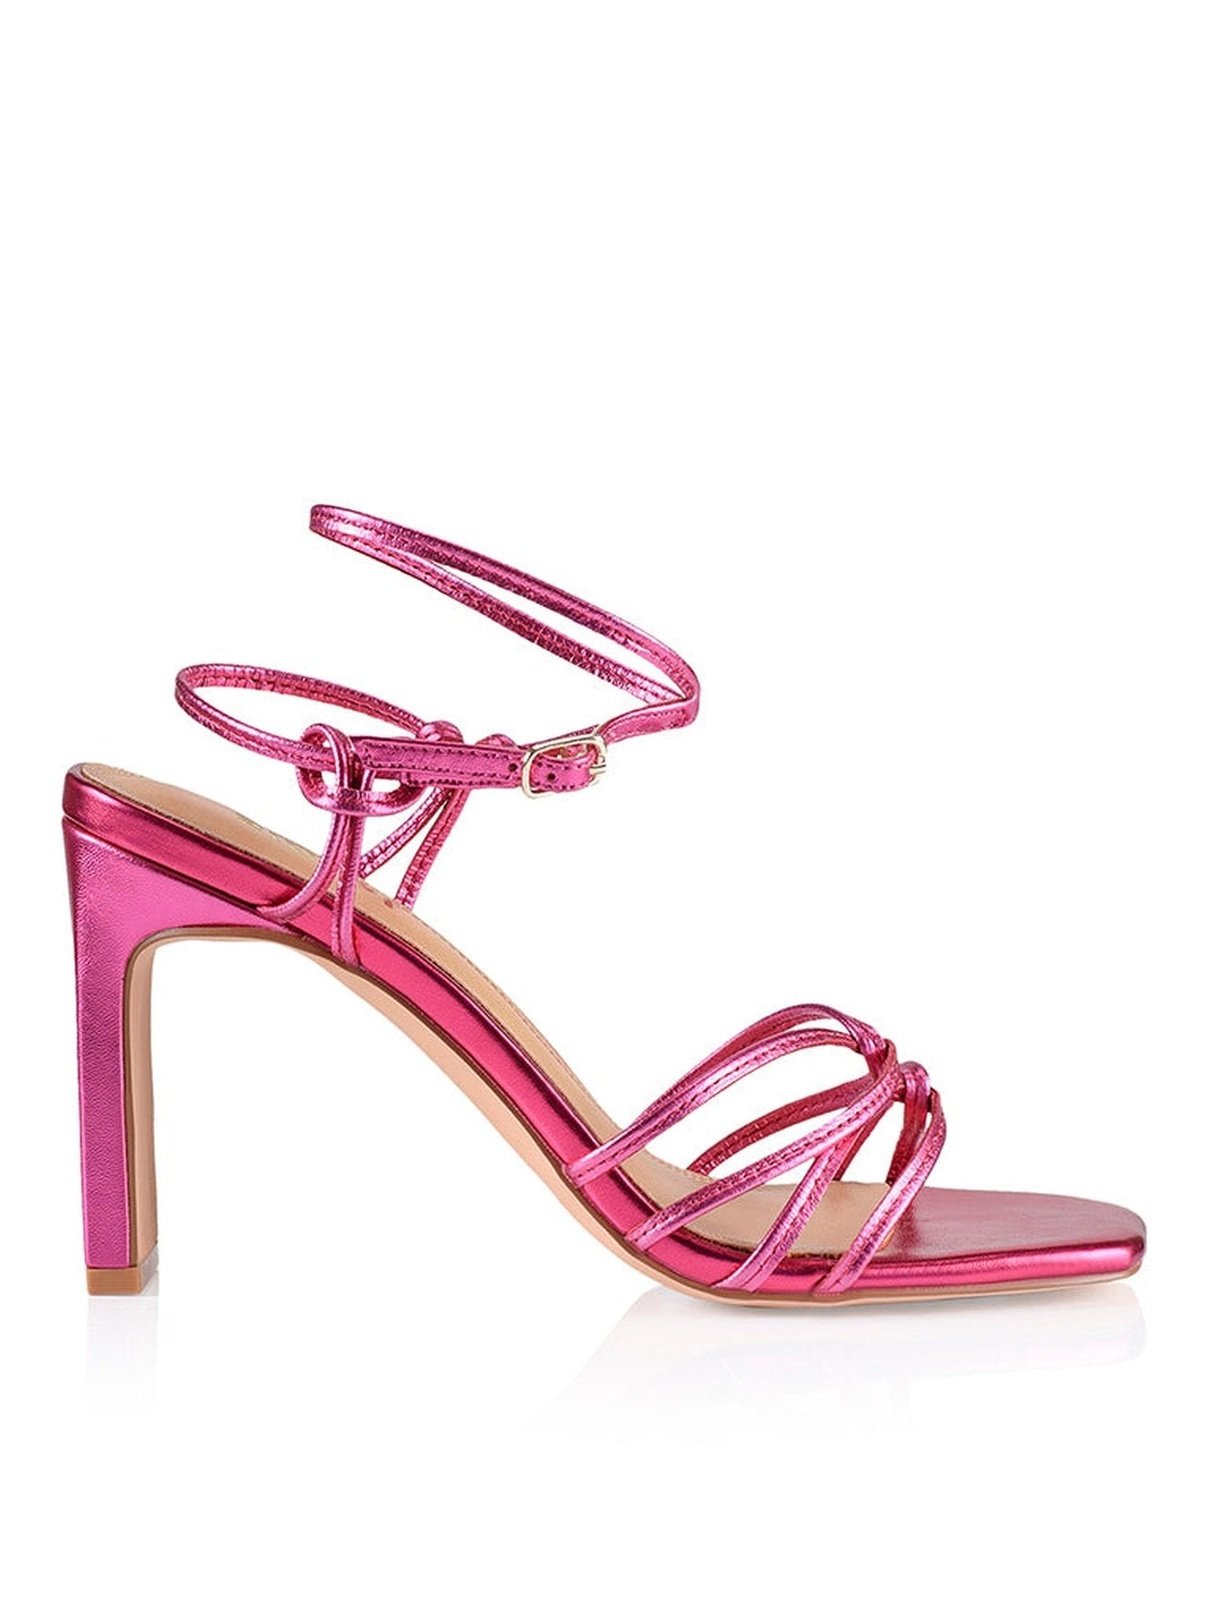 Kalista Hot Pink Block Heel Sandals | Siren Shoes